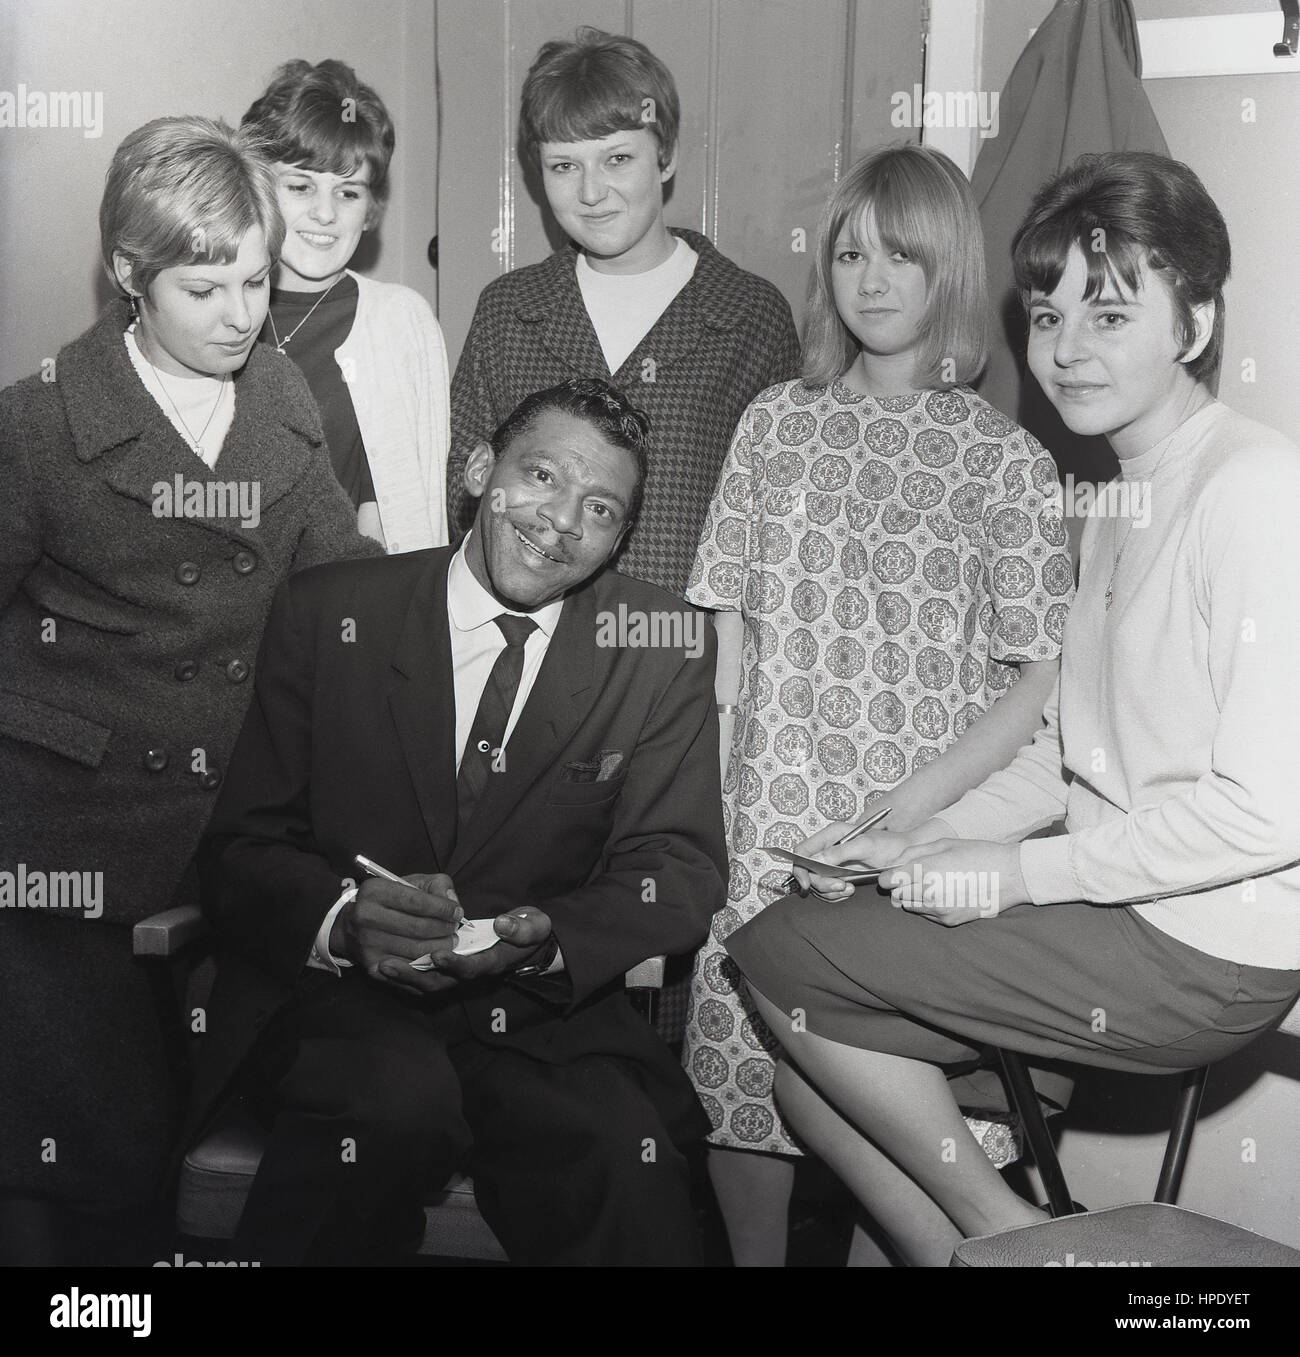 1964, historique, octobre, musicien américain, chanteur de blues et célèbre joueur d'harmonica Little Walter avec des fans féminins, Borough Assembly Hall, Aylesbury, Angleterre, Royaume-Uni Banque D'Images